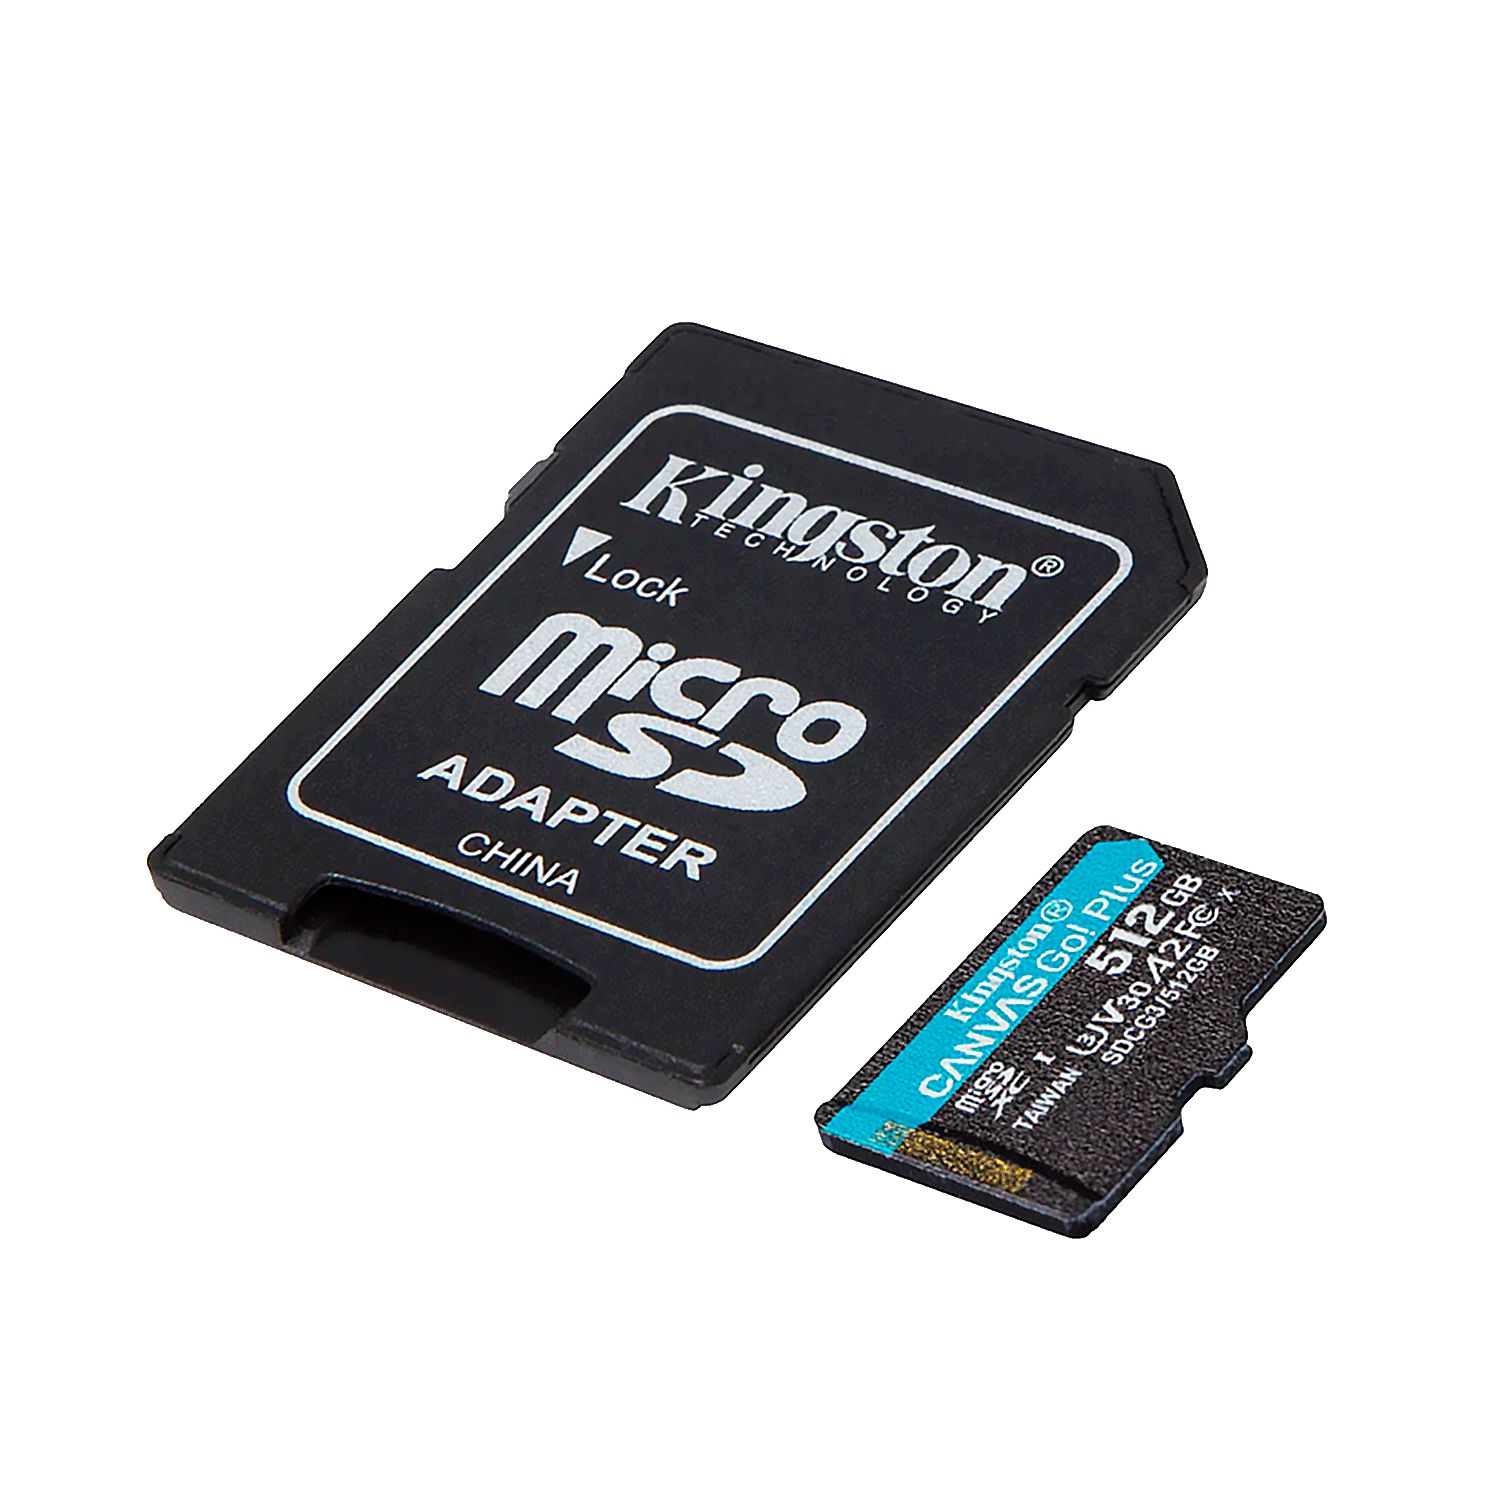 Cartão de Memória Micro SD Kingston Canvas Go Plus 512GB 170MBS / 90MBS - (SDCG3/512GB)